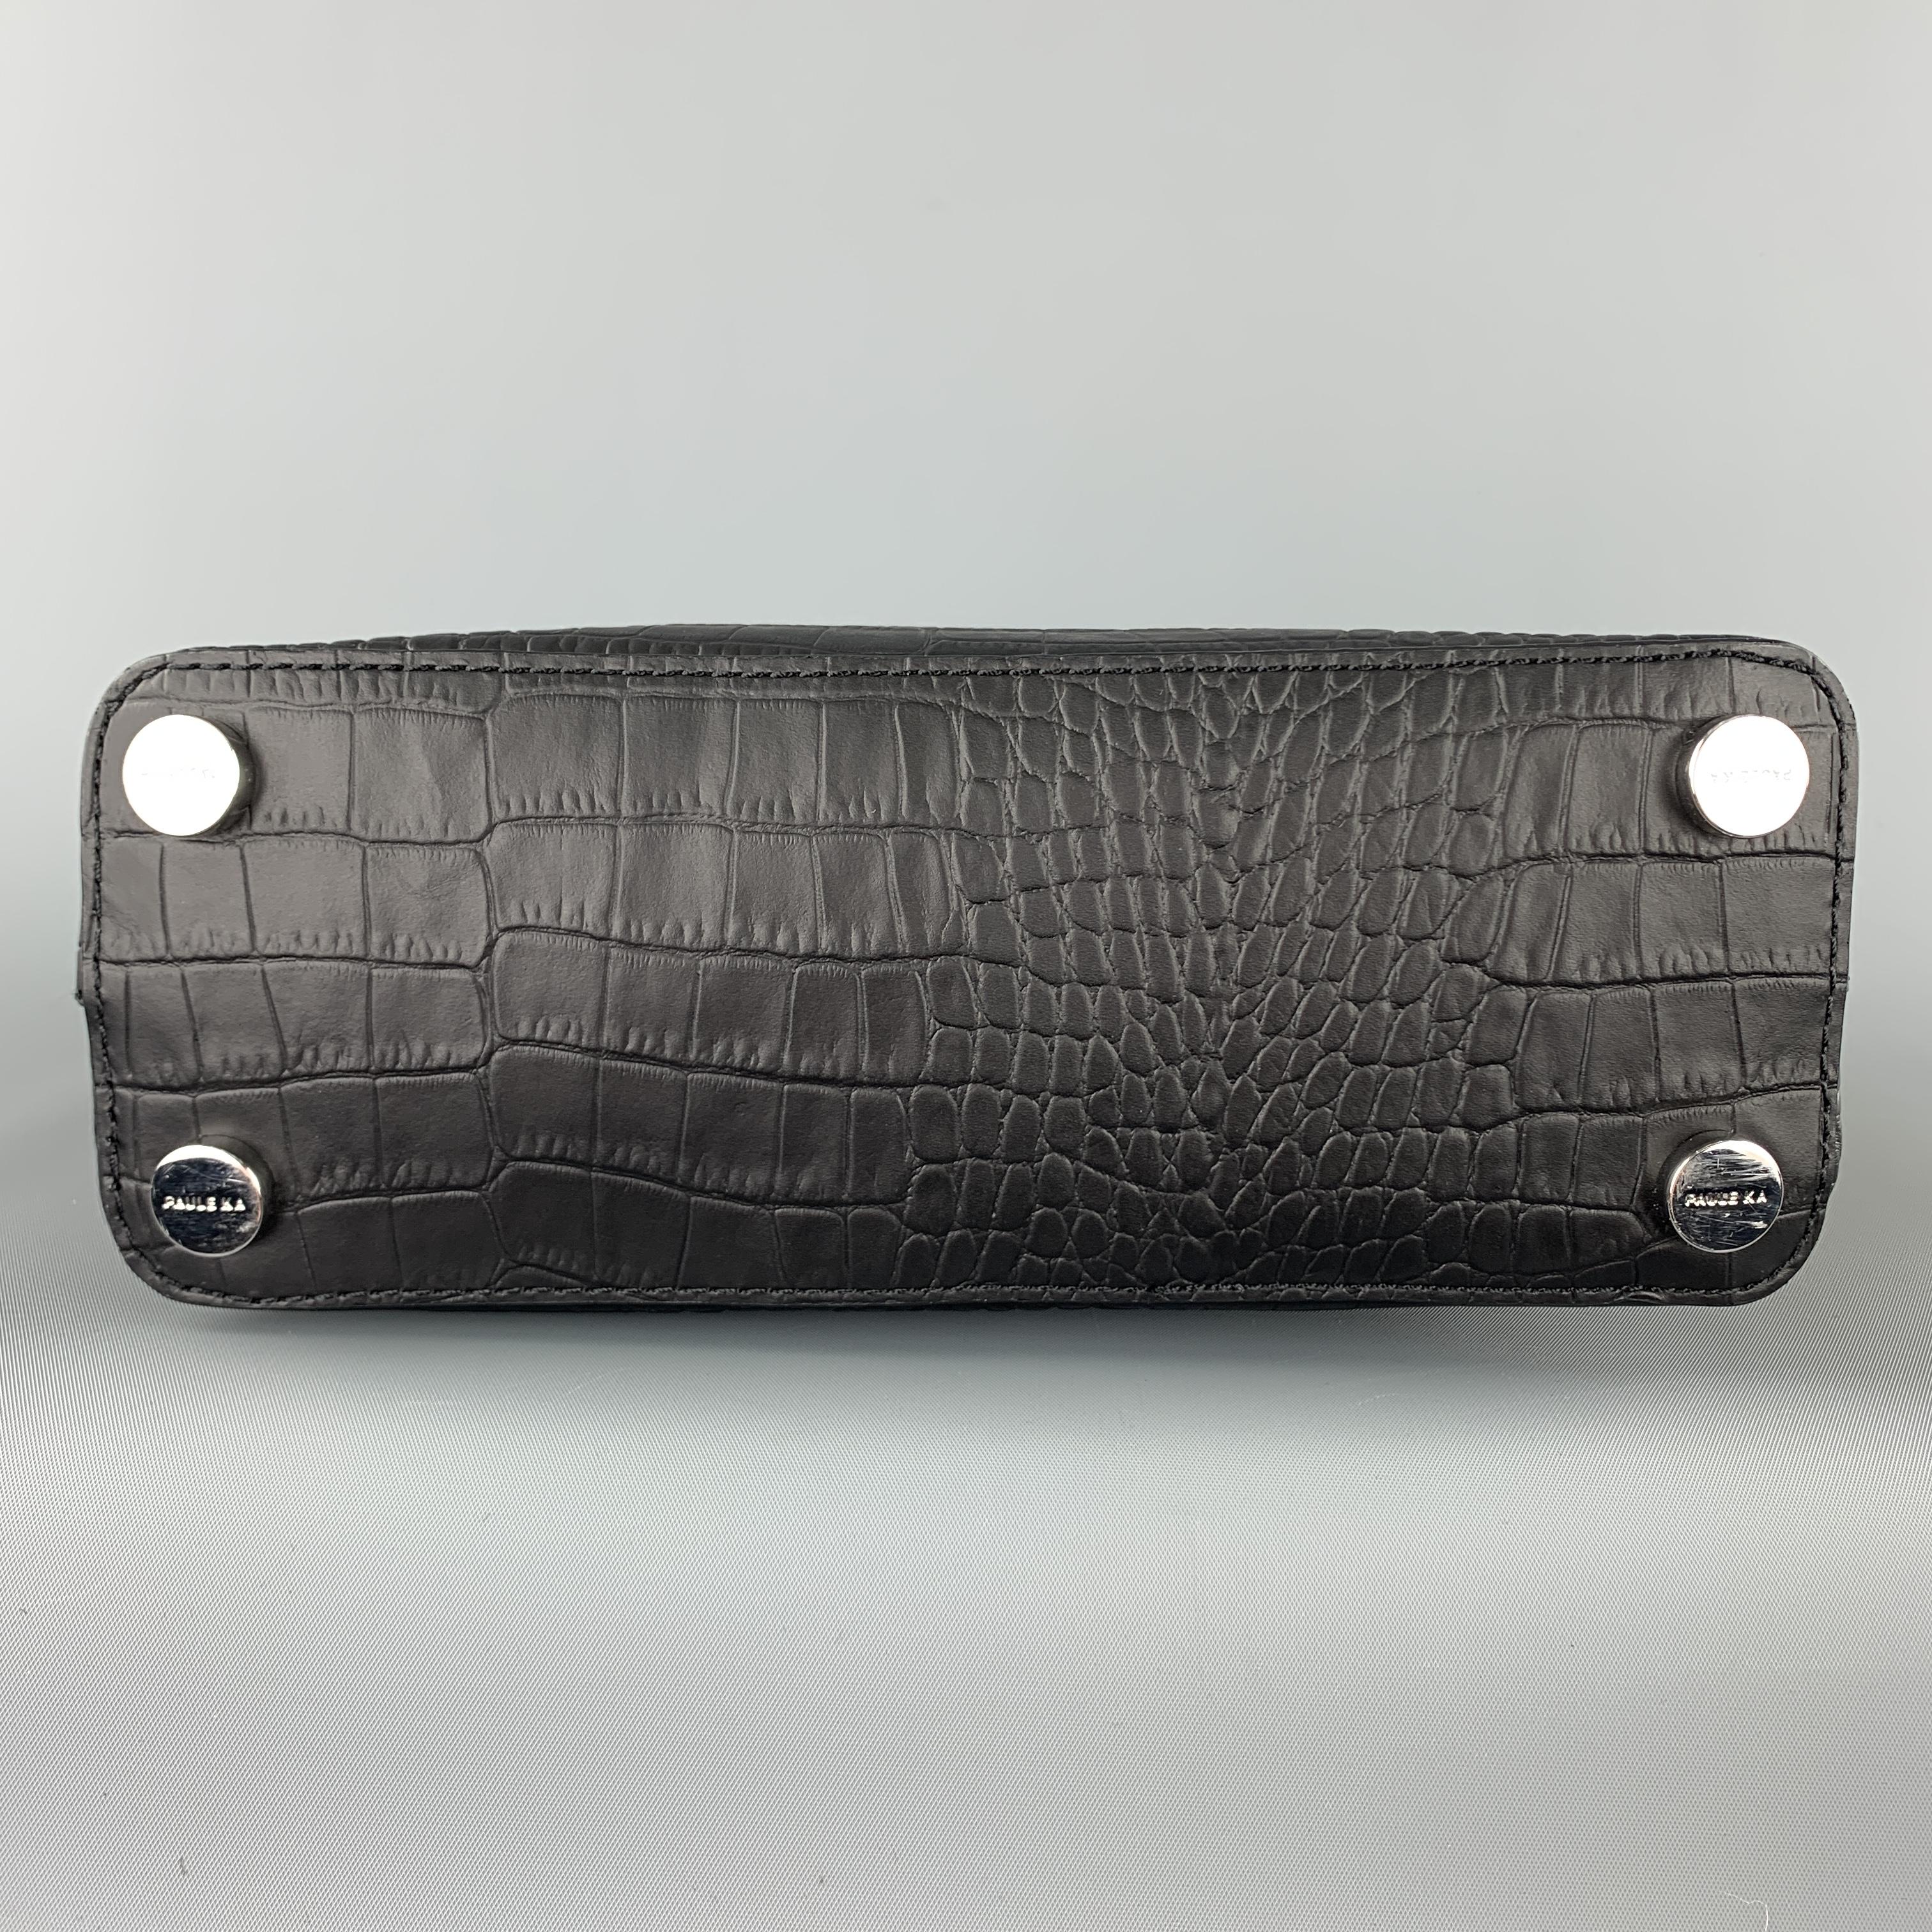 PAUL KA Black Crocodile Embossed Leather Mini Bow Handbag 1